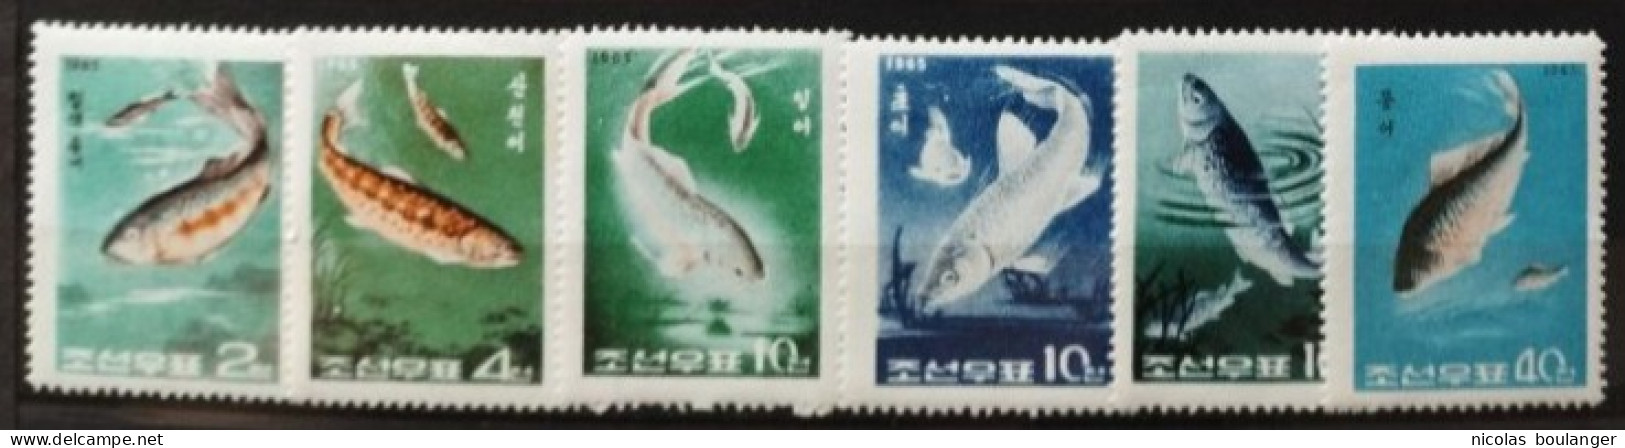 Corée Du Nord 1965 / Yvert N°601-606 / * - Korea, North